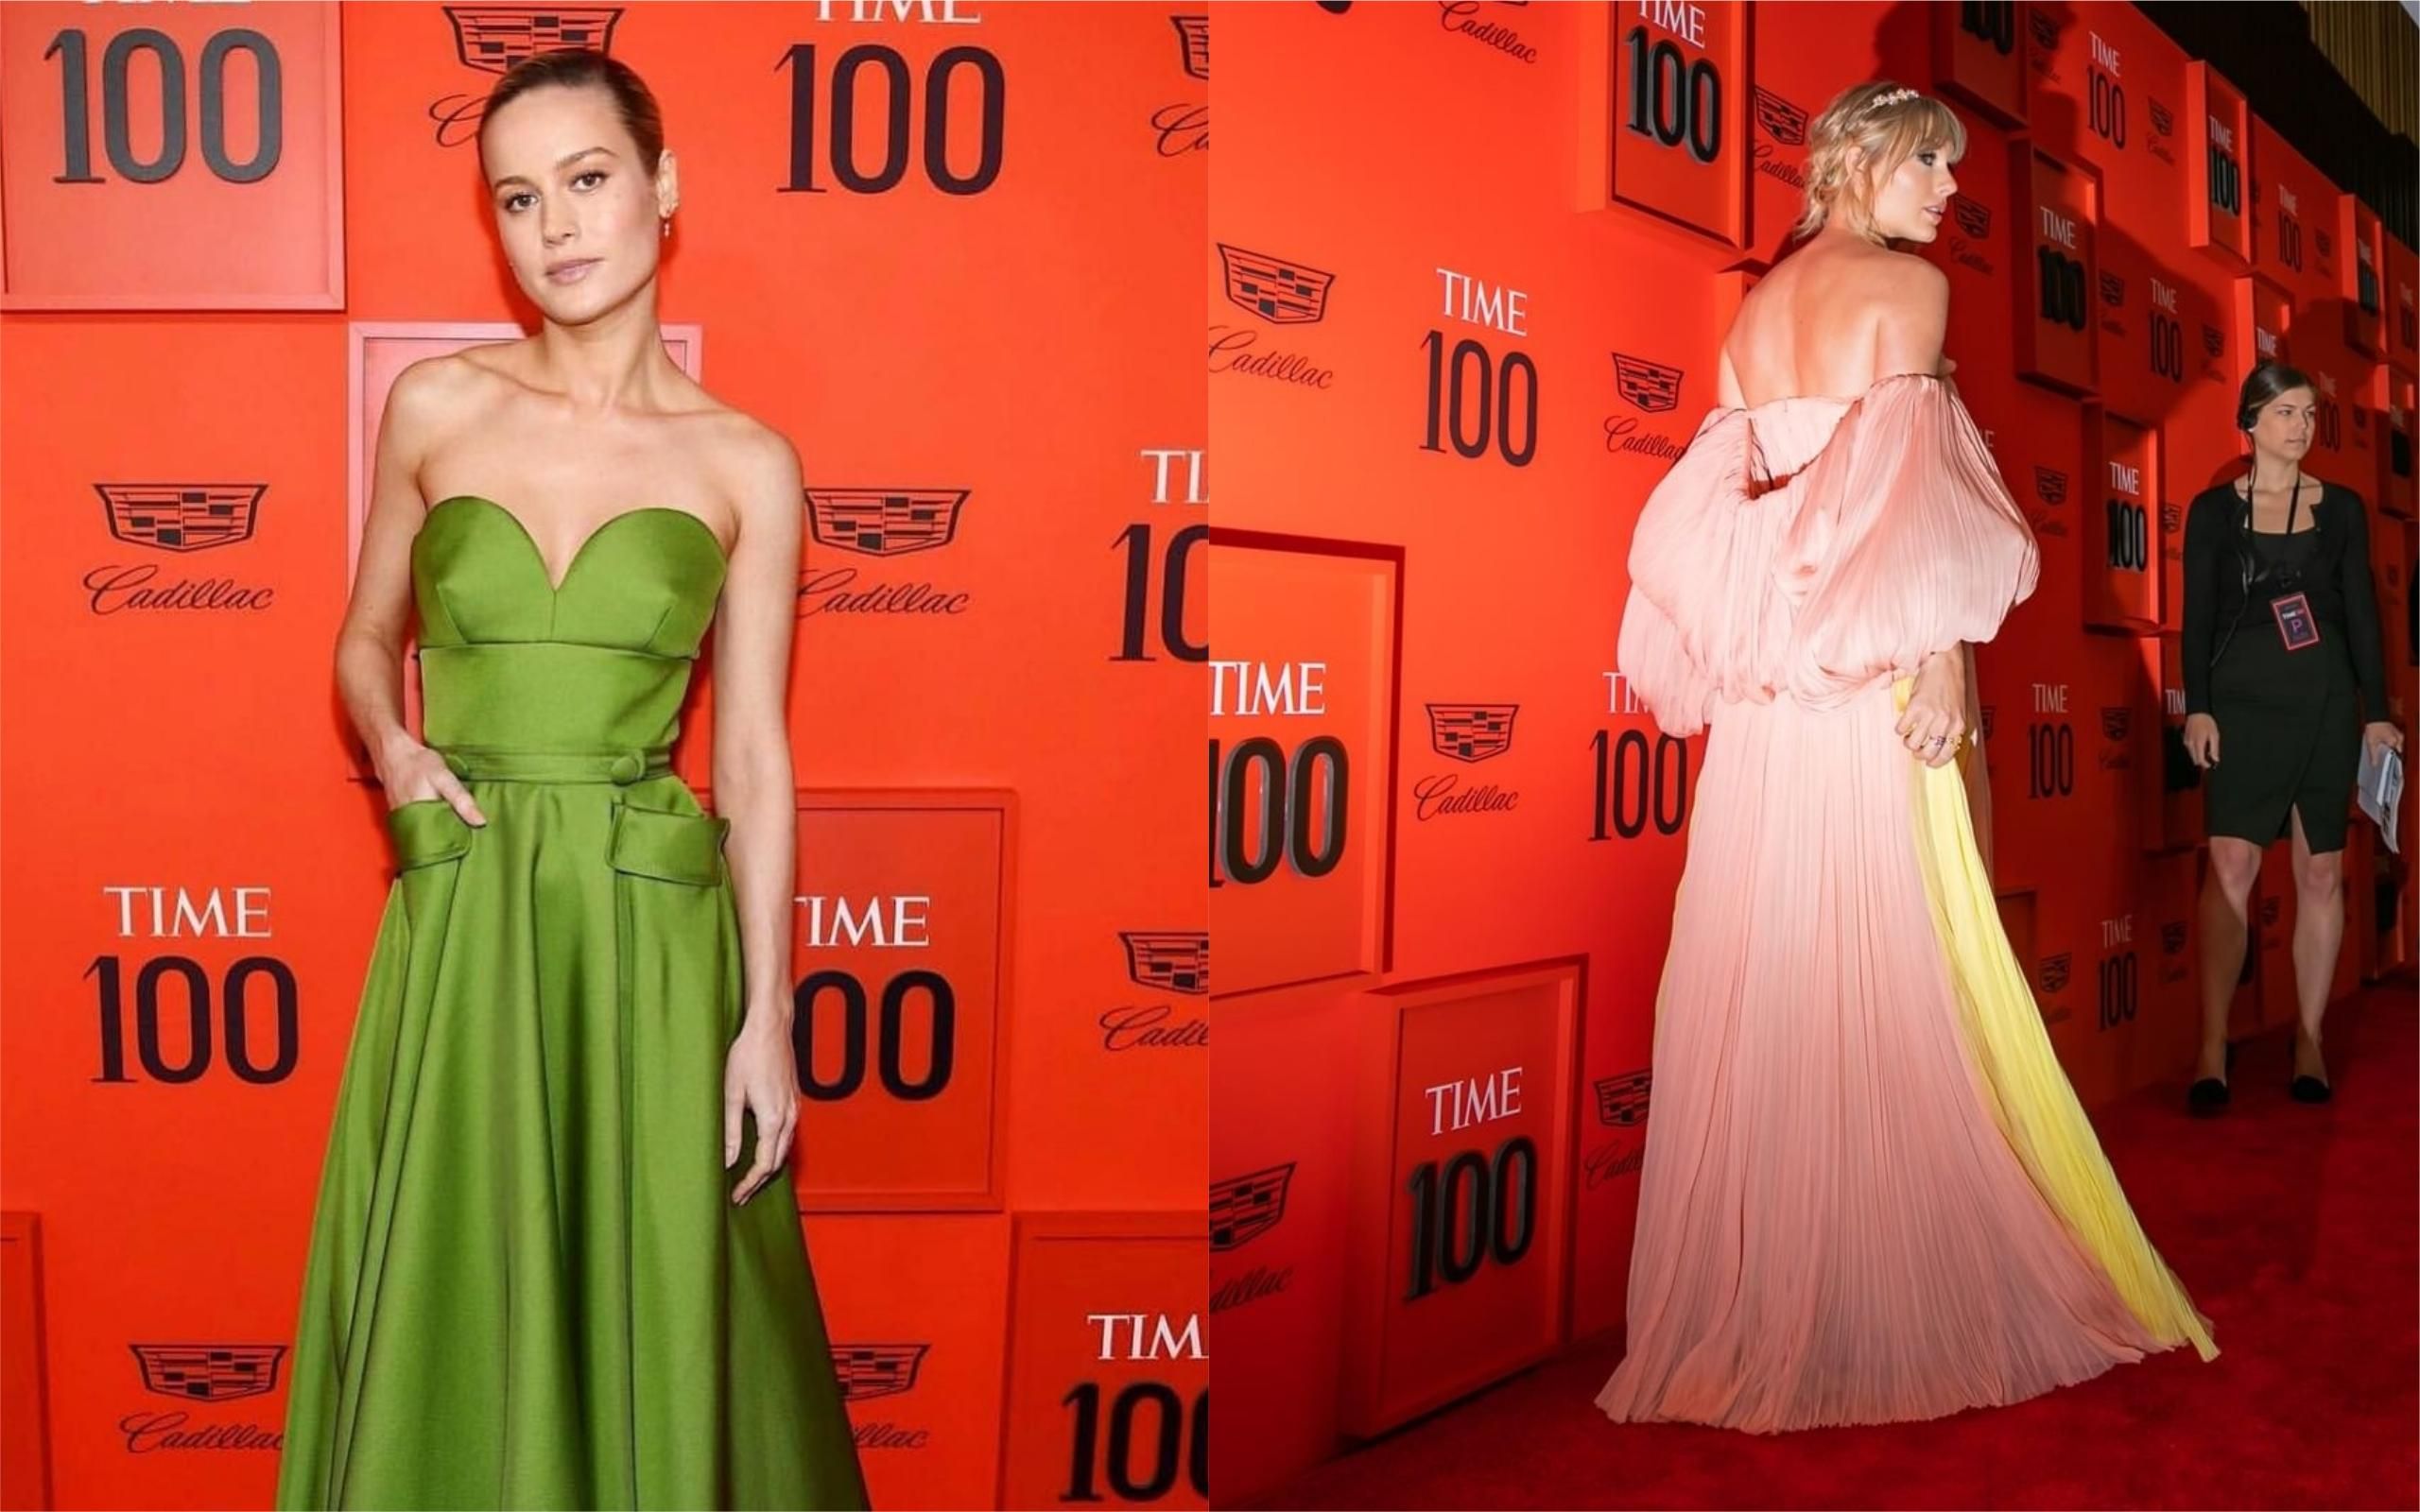 Тейлор Свифт, Бри Ларсон и другие звезды стали гостями гала-вечера Time: фото роскошных платьев